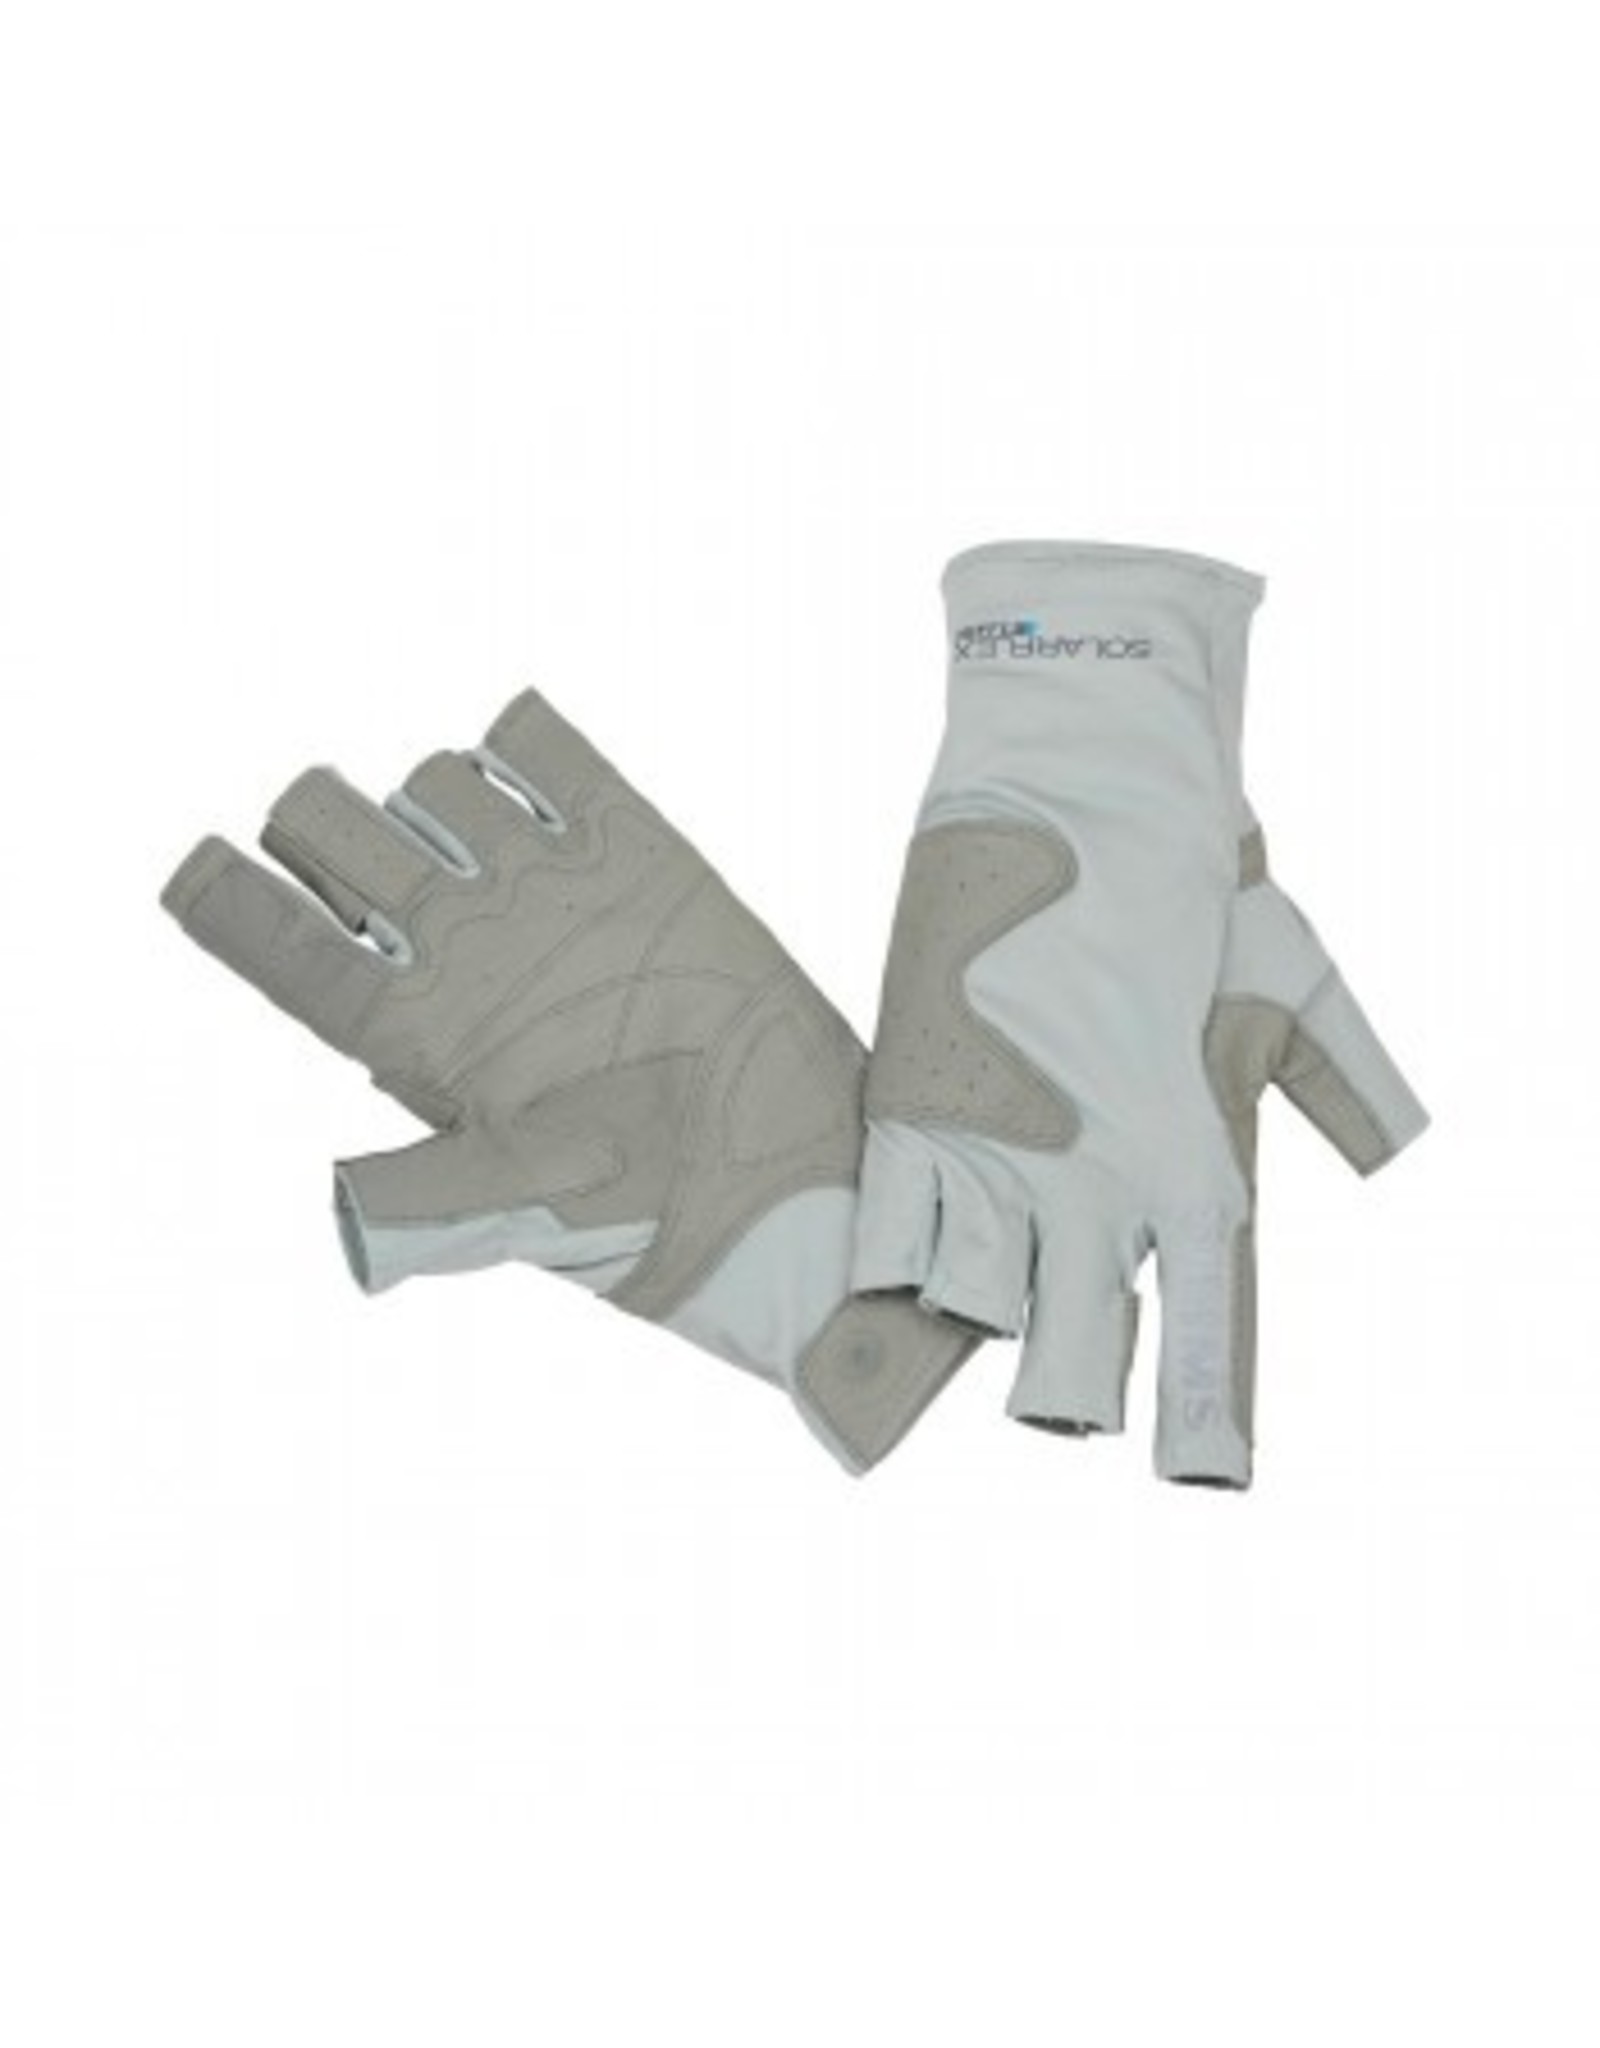 Simms Simms - Solarflex Guide Glove